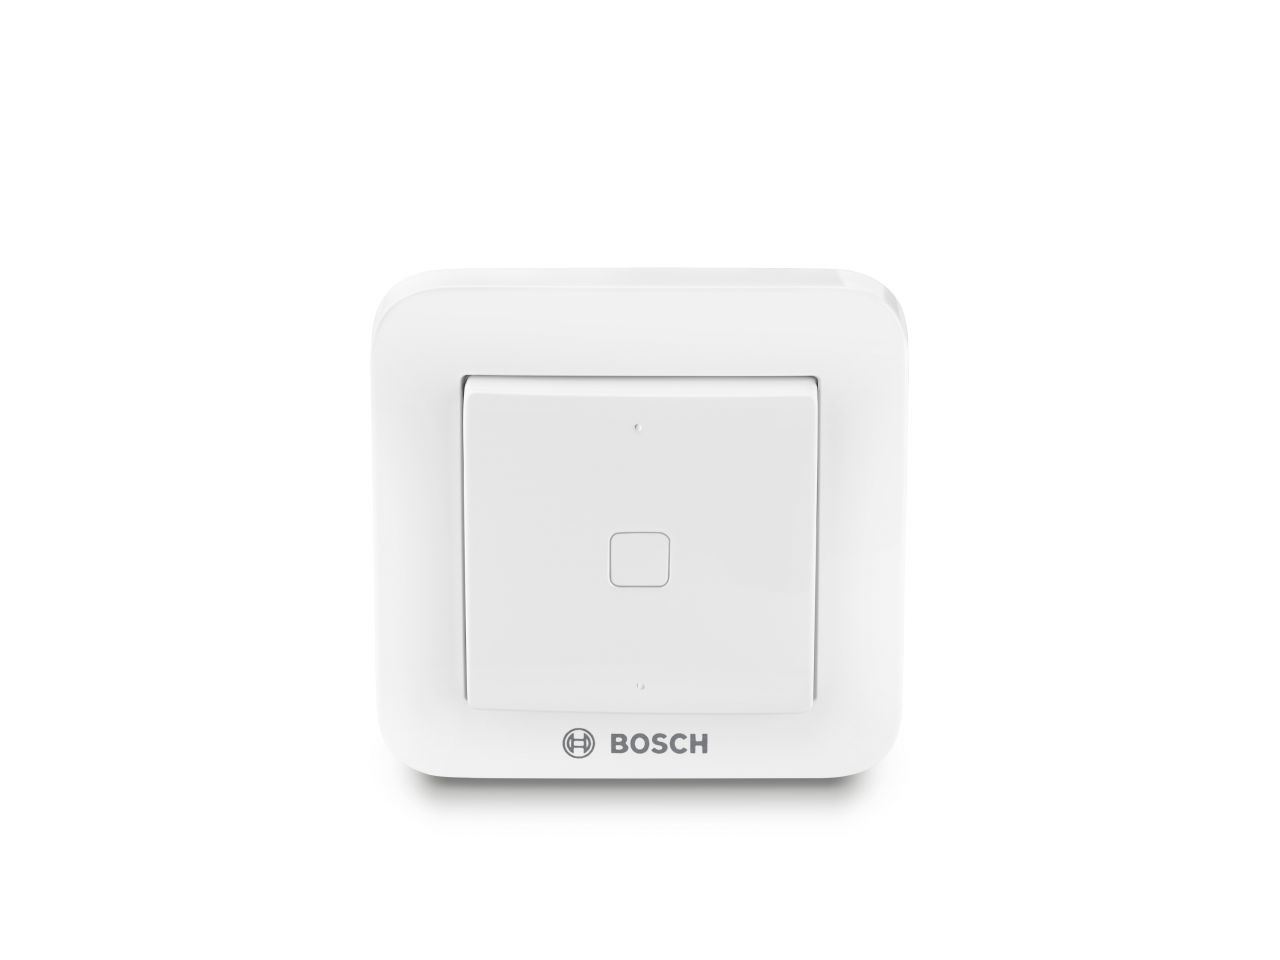 Bosch Funk-Wandschalter Smart Home weiß, inkl. Batterie